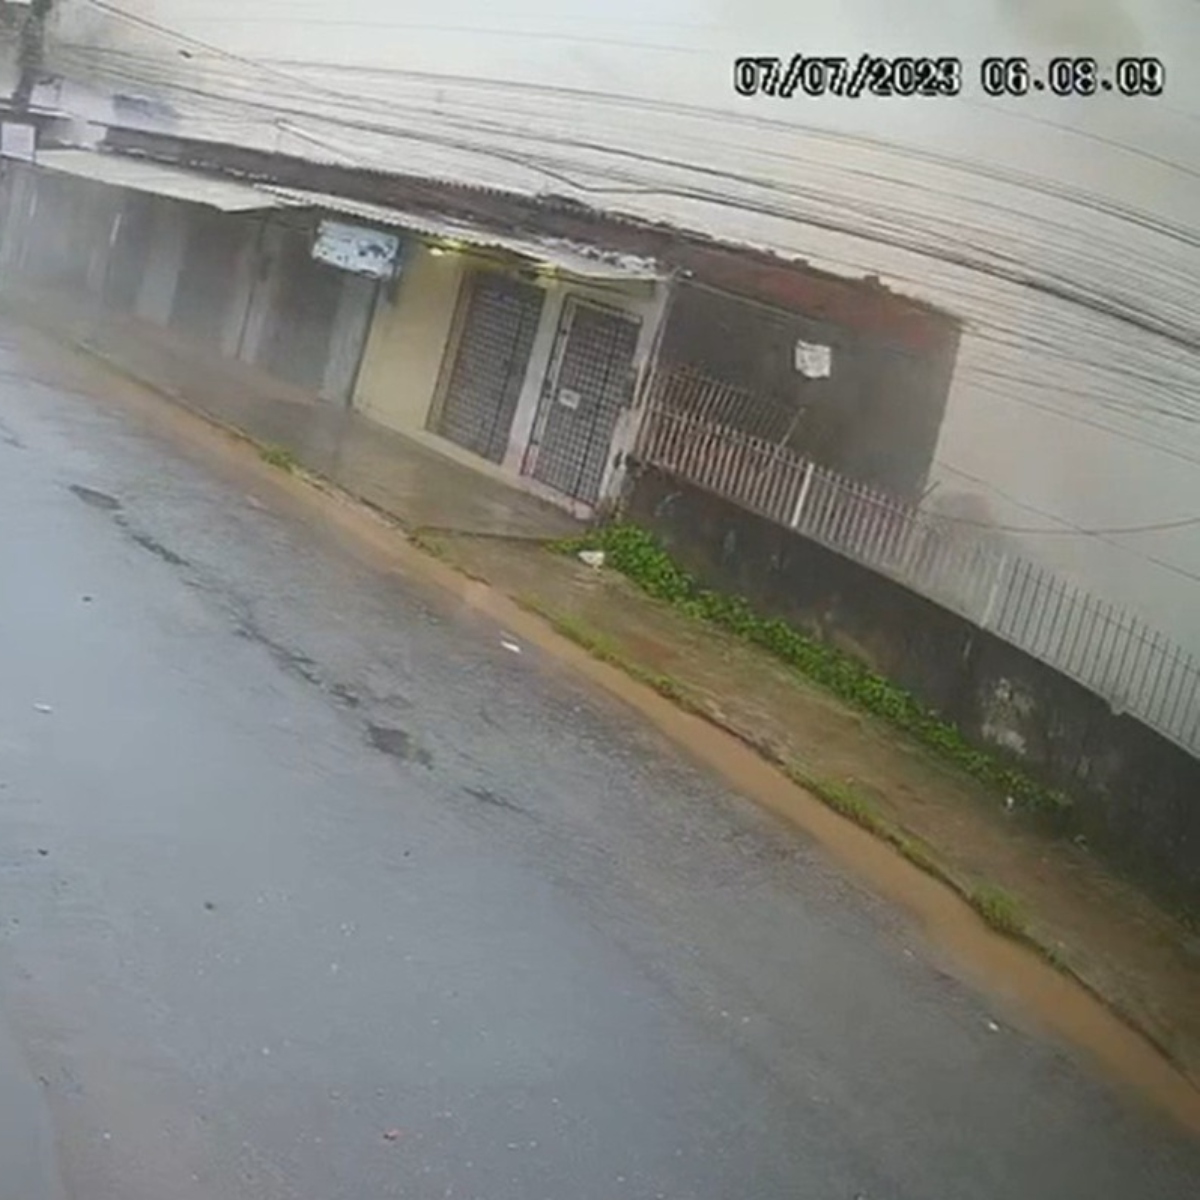  Uma câmera de segurança gravou o momento exato em que um prédio desabou no Recife, em Pernambuco, na manhã desta sexta-feira (7). 